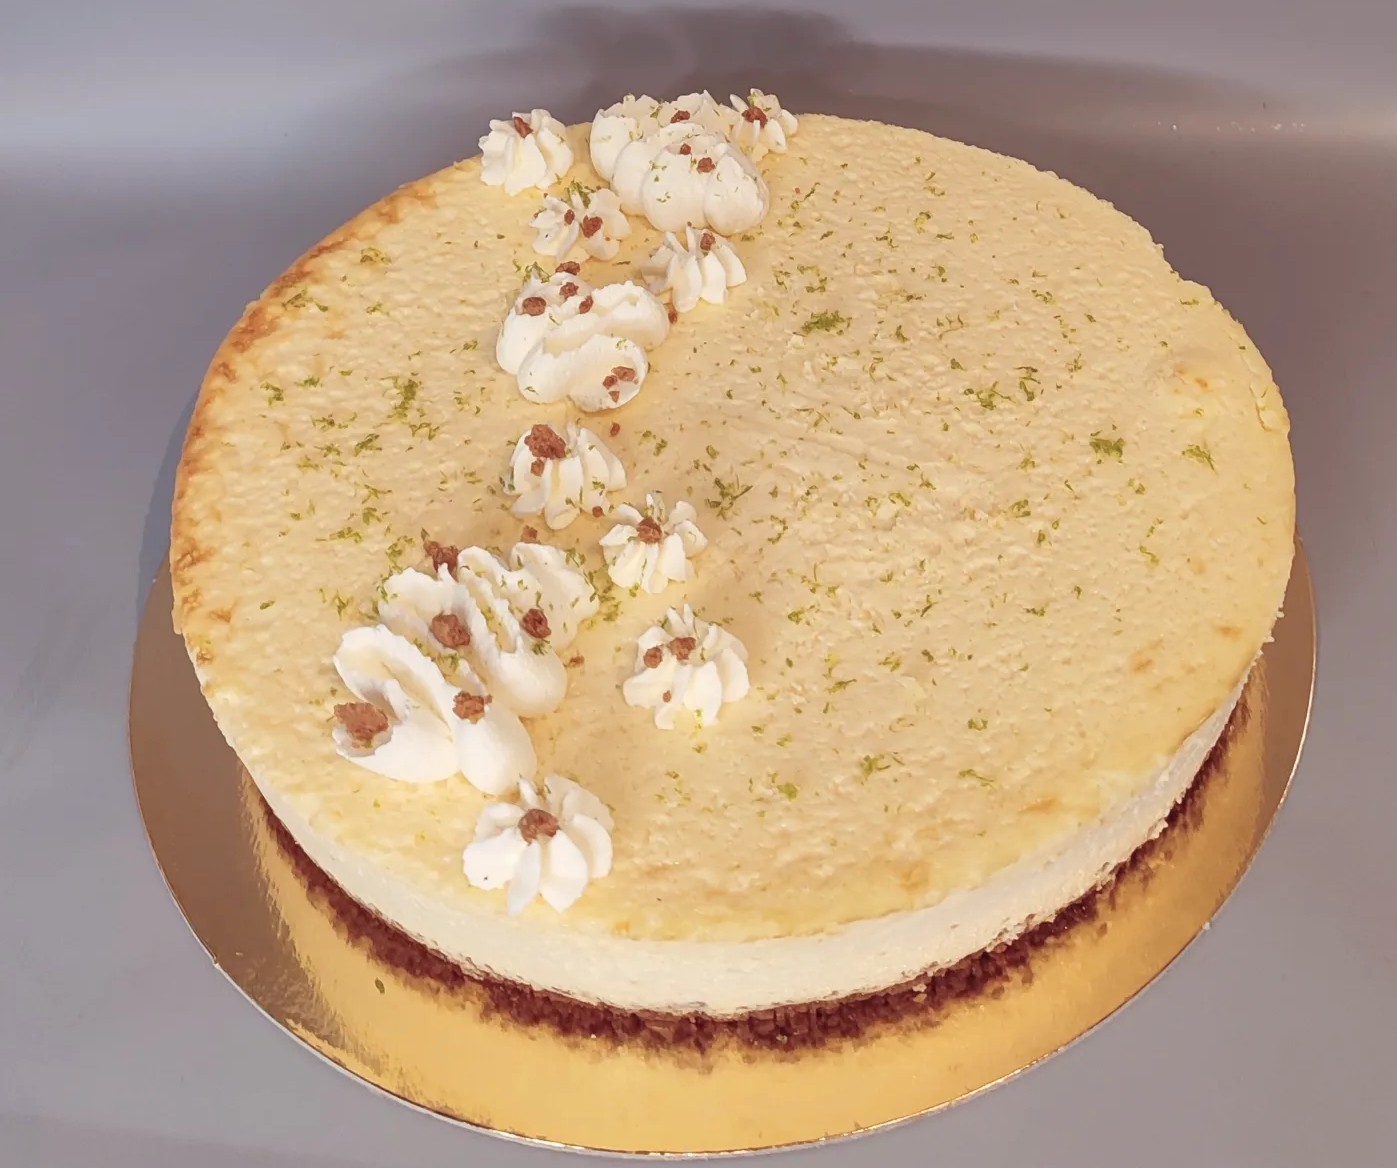 New York cheesecake :
Fond spéculoos, cheesecake avec un goût subtil de citron vert (10/12parts)